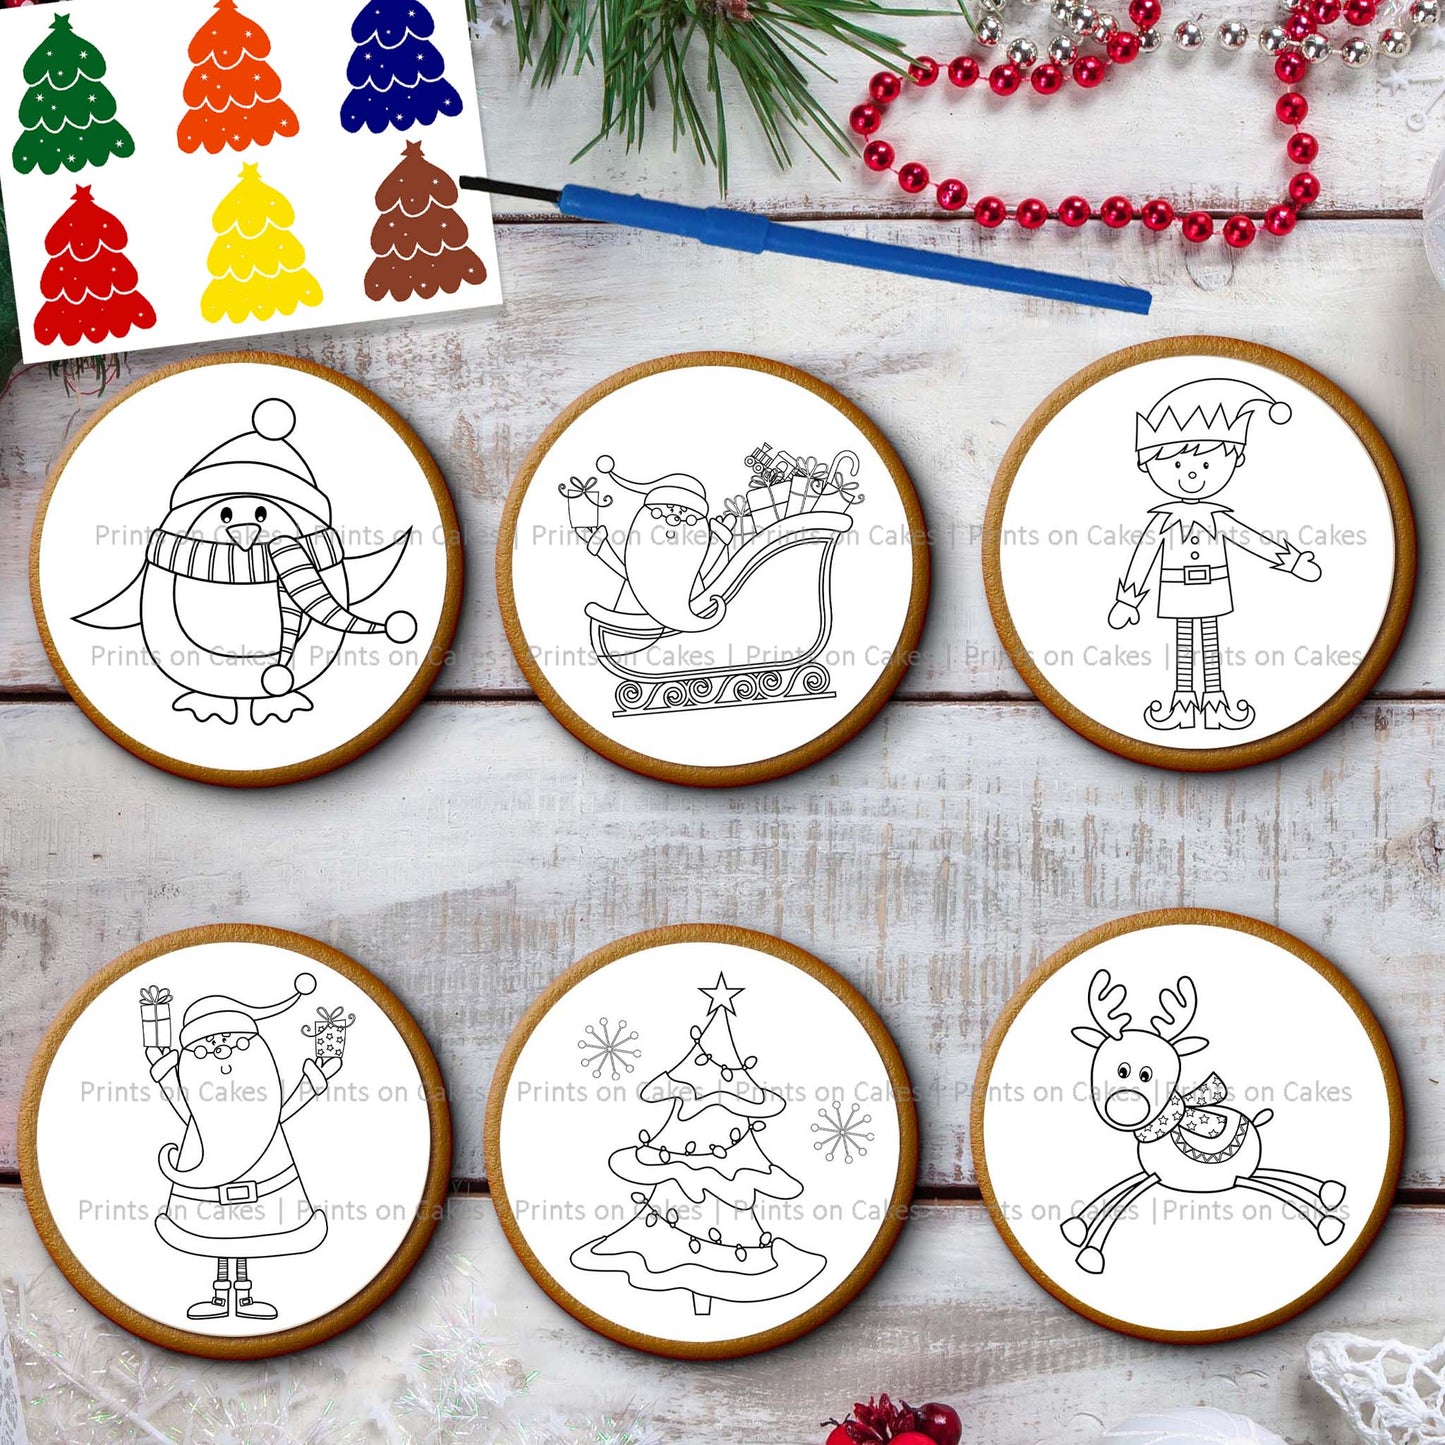 Paint Your Own PYO Kit - Santa & Friends Edible Cake Topper, Edible Cake Image, ,printsoncakes